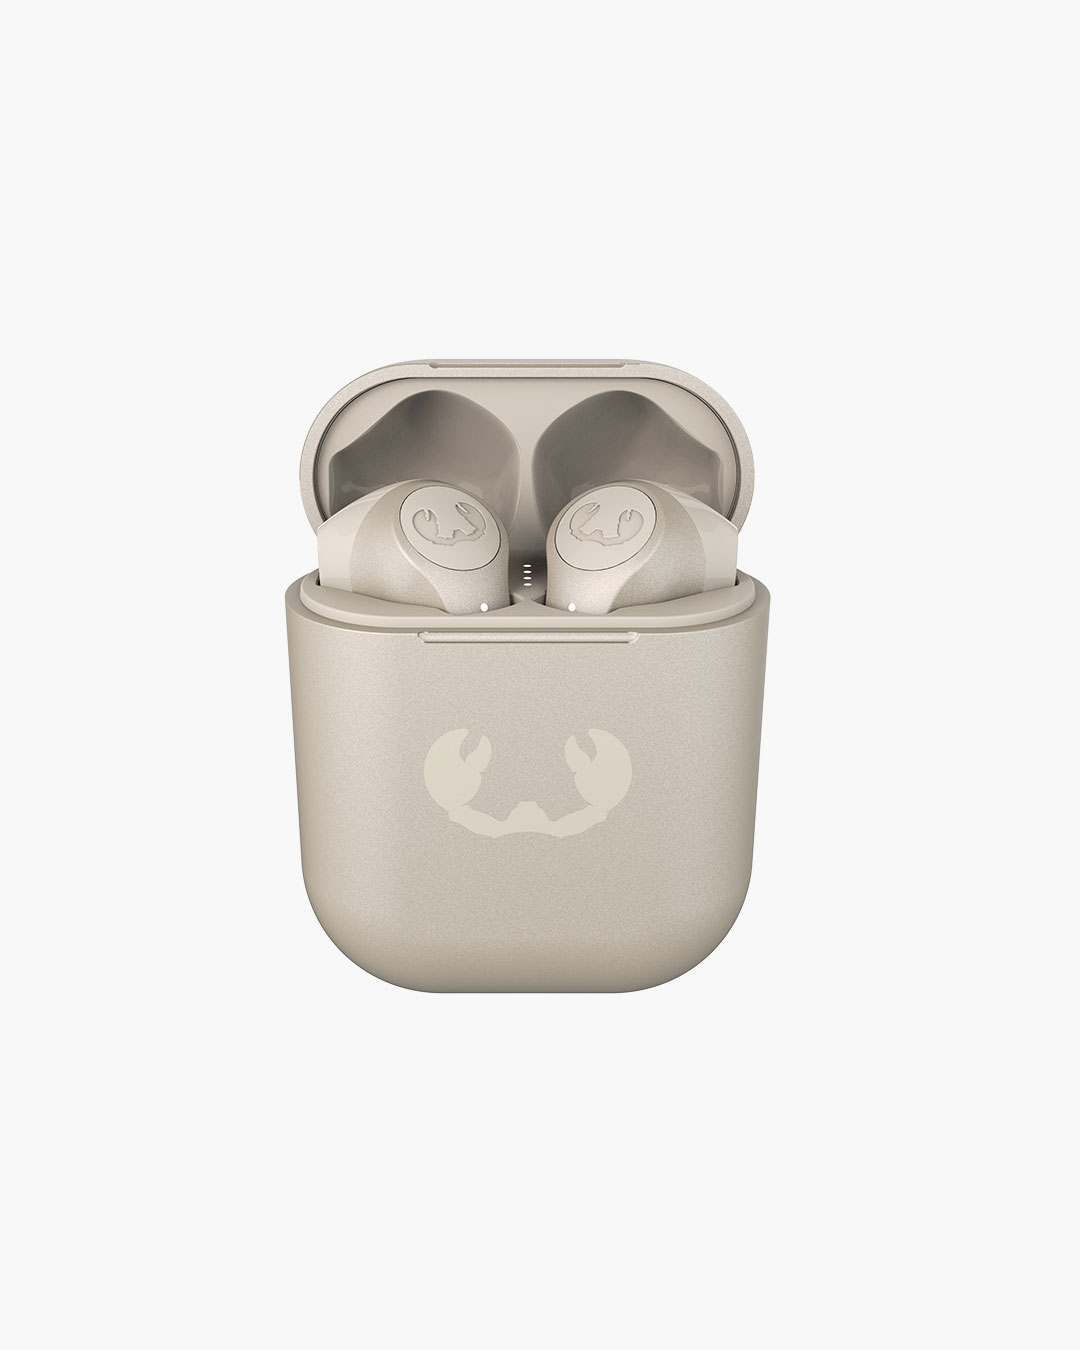 Fresh 'n Rebel - Twins 3 - True Wireless In-ear headphones - Silky Sand